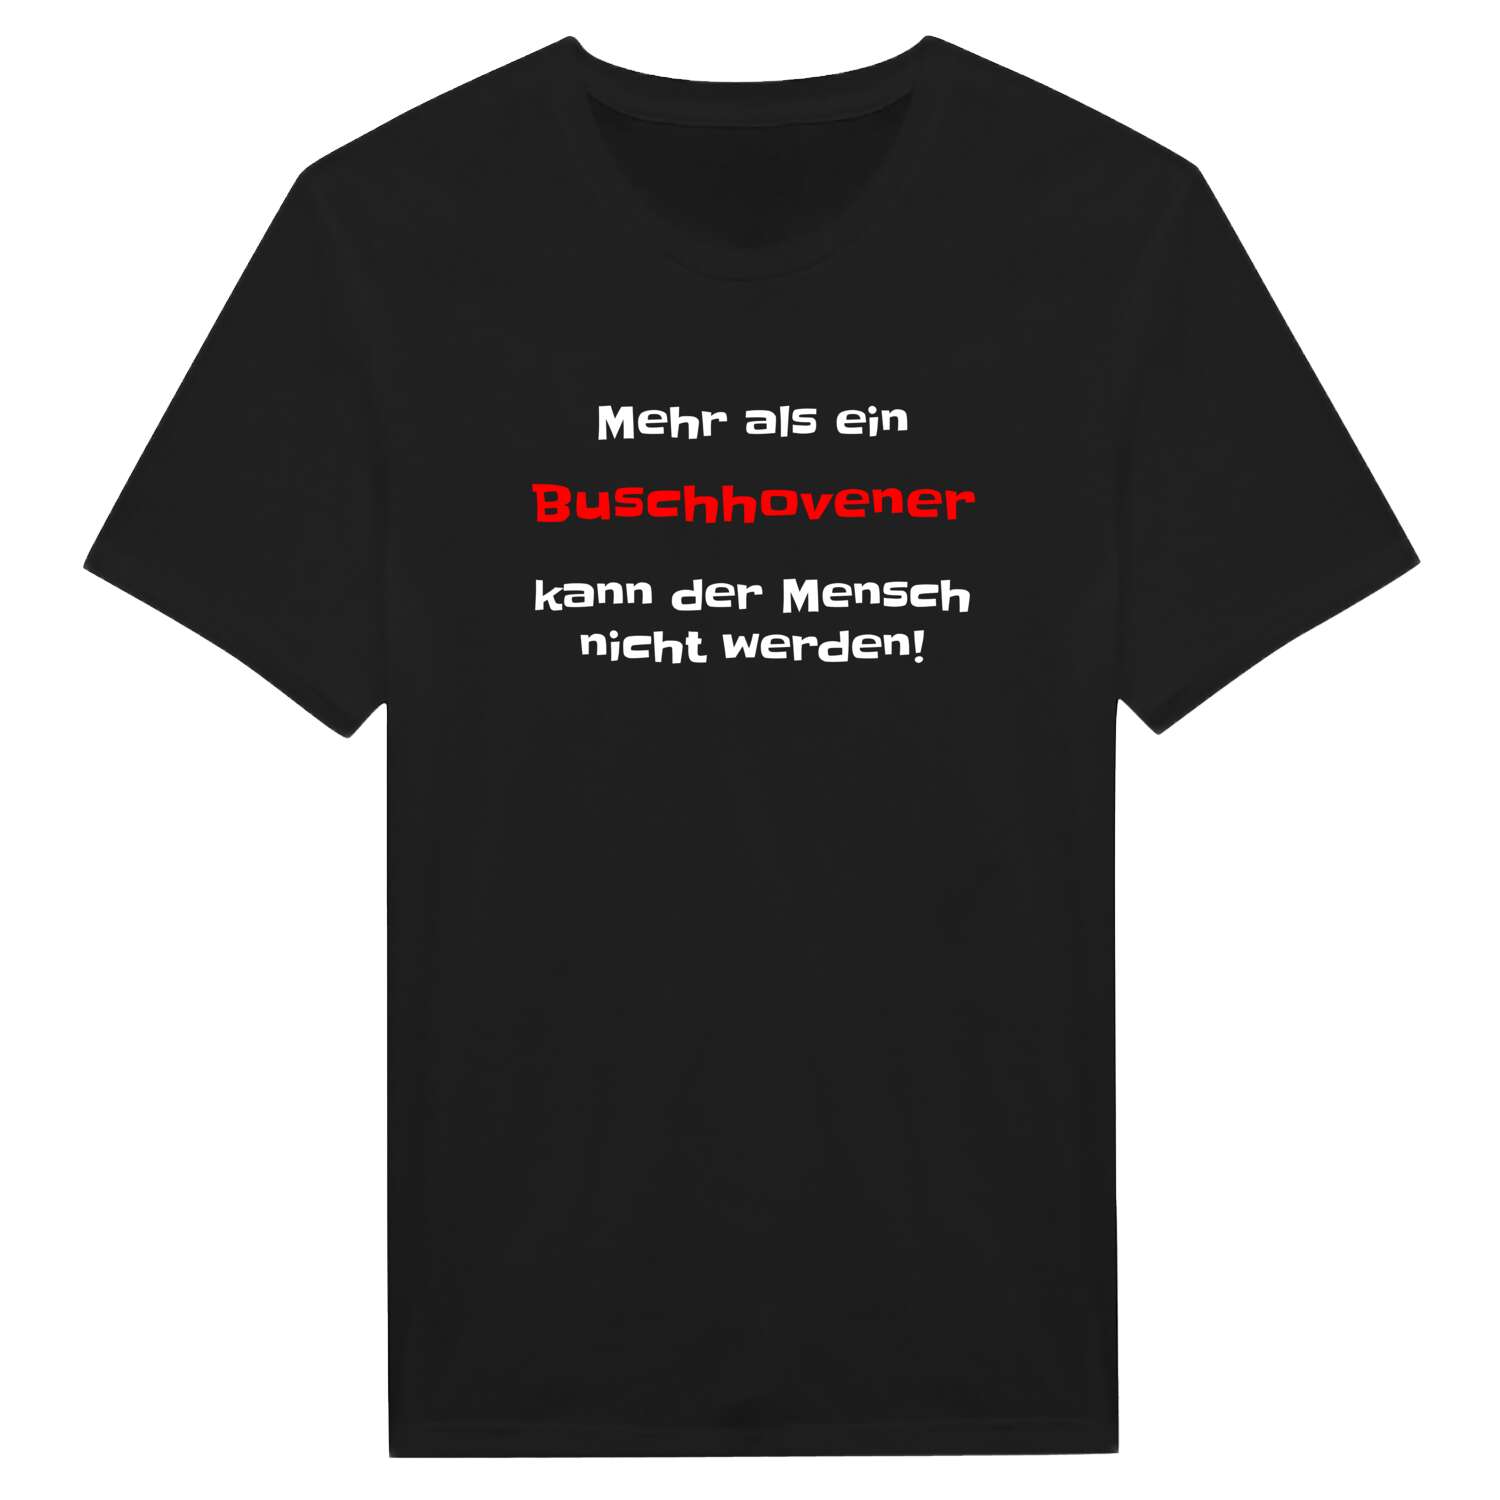 Buschhoven T-Shirt »Mehr als ein«